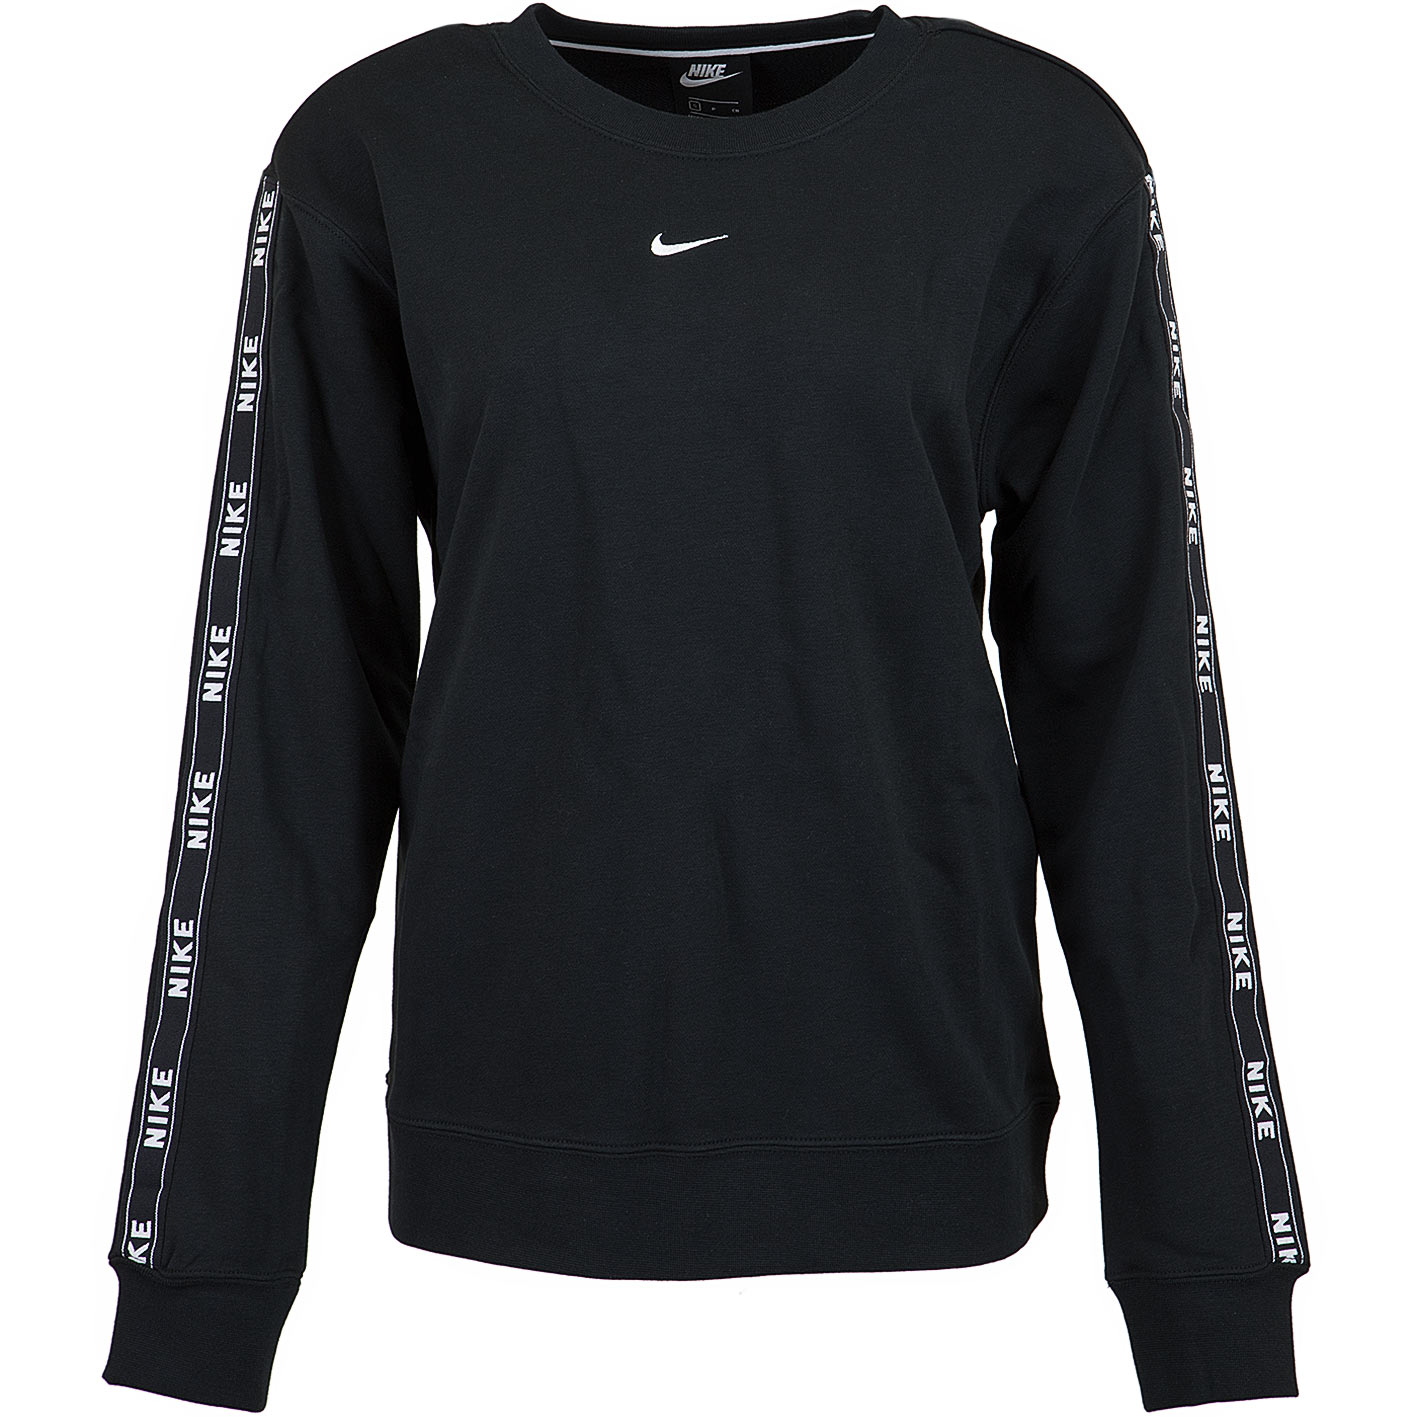 ☆ Nike Damen Sweatshirt Logo Tape schwarz/weiß - hier bestellen!